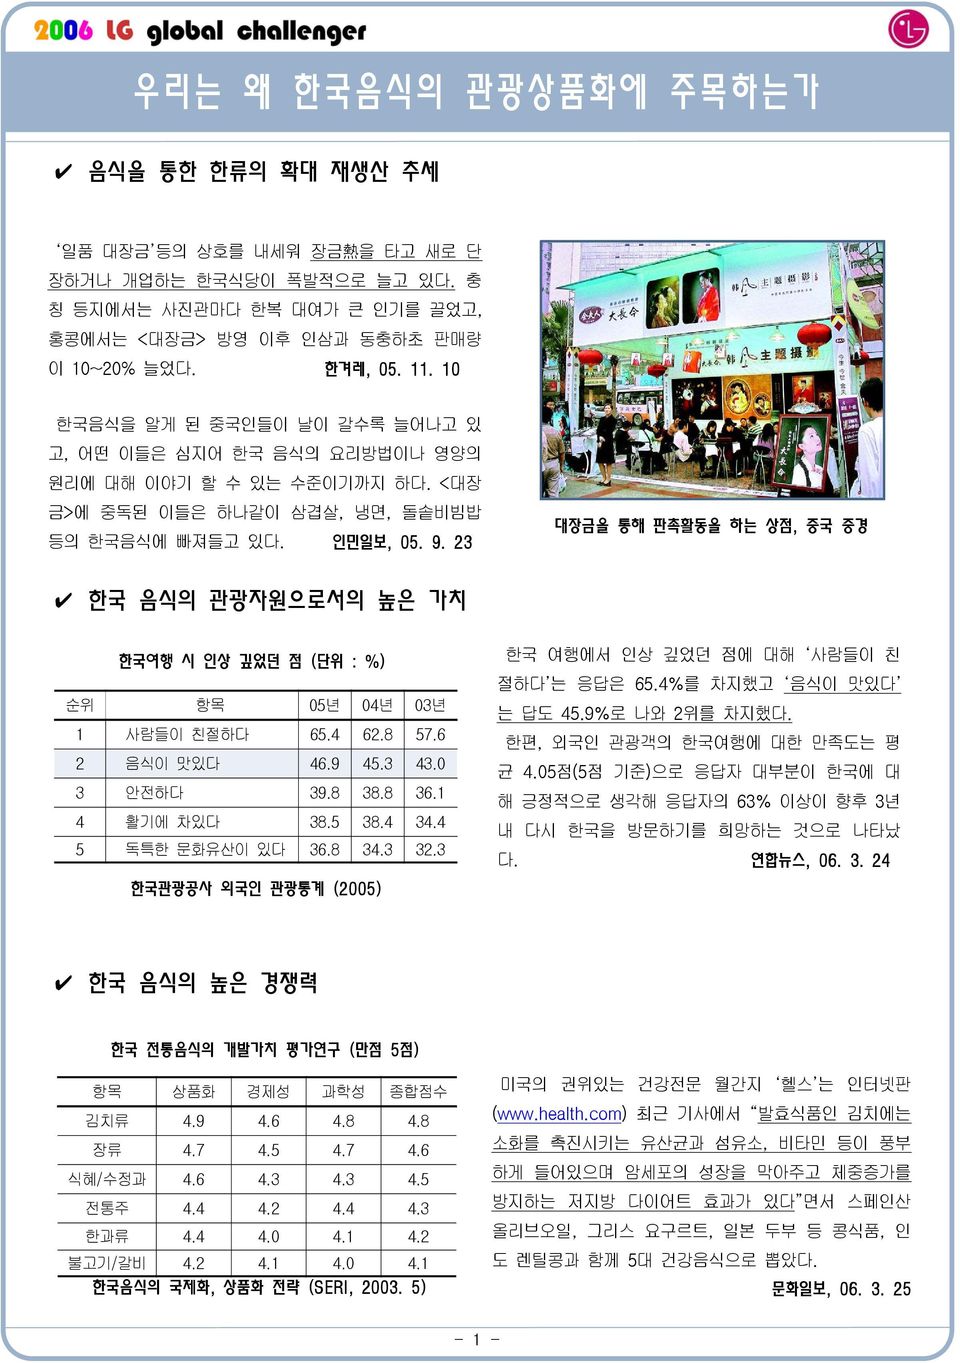 23 대장금을 통해 판촉활동을 하는 상점, 중국 중경 한국 음식의 관광자원으로서의 높은 가치 한국여행 시 인상 깊었던 점 ( 단위 : %) 순위 항목 05년 04년 03년 1 사람들이 친절하다 65.4 62.8 57.6 2 음식이 맛있다 46.9 45.3 43.0 3 안전하다 39.8 38.8 36.1 4 활기에 차있다 38.5 38.4 34.